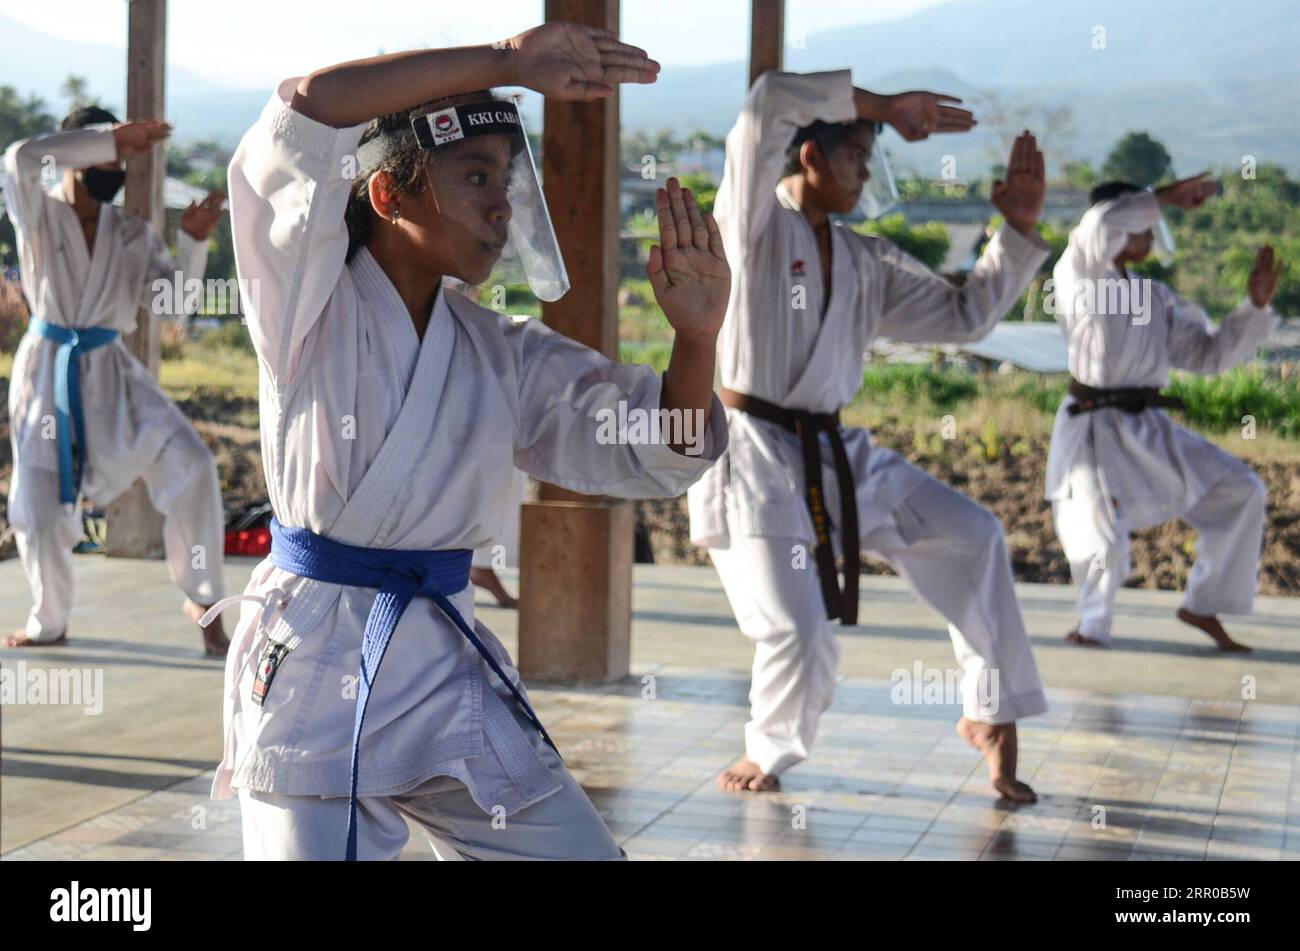 200807 -- PECHINO, 7 agosto 2020 -- i bambini che indossano uno scudo facciale praticano il karate in mezzo all'epidemia di COVID-19 a Malang, Giava Orientale, Indonesia, 6 agosto 2020. Foto di /Xinhua XINHUA FOTO DEL GIORNO AdityaxHendra PUBLICATIONxNOTxINxCHN Foto Stock